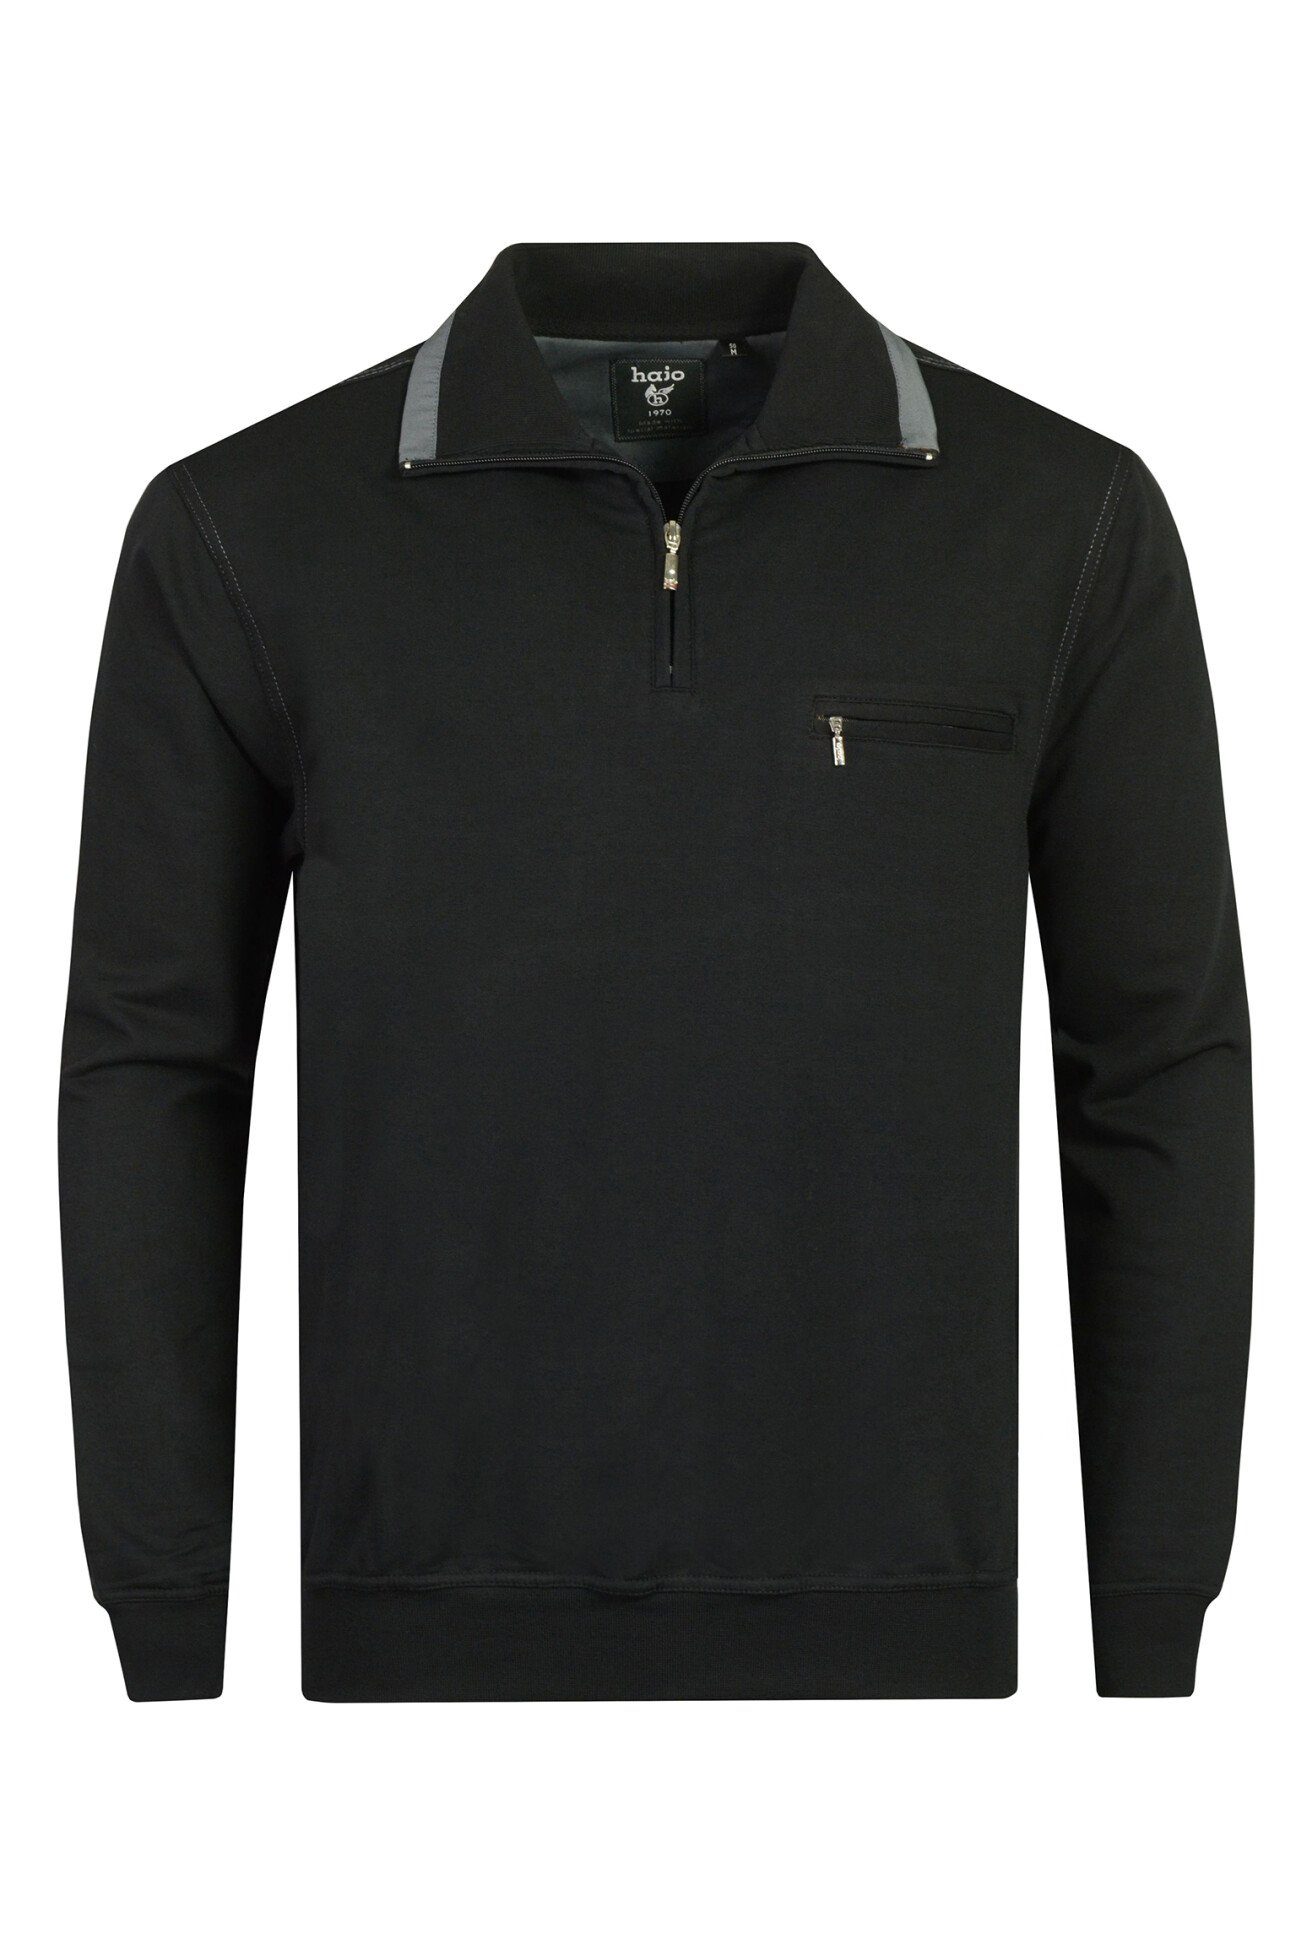 Hajo schwarz Sweatshirt Fresh-Premiumqualität, hautsympathisch, atmungsaktiv Stay 20023